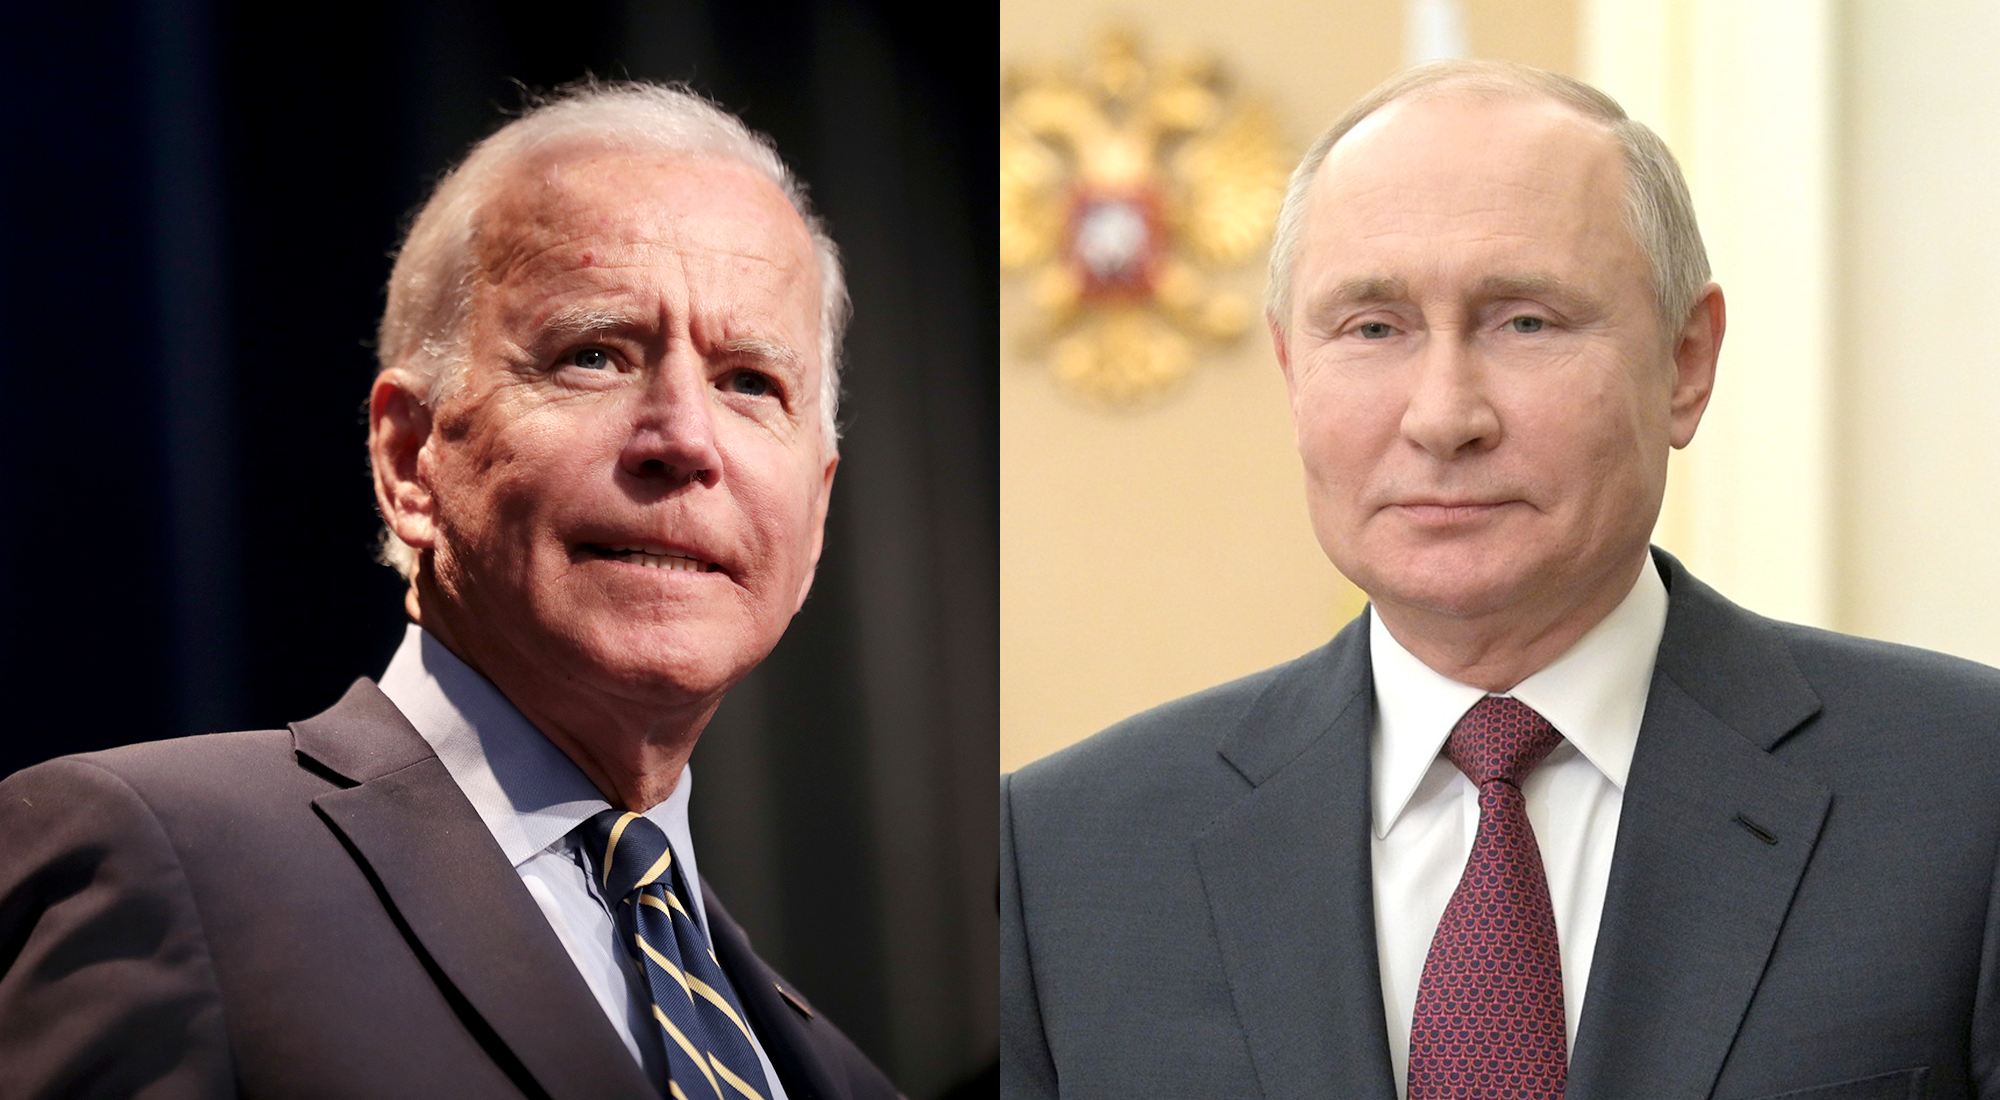 Cruinniú faoin Úcráin aontaithe ‘i bprionsabal’ ag Biden agus Putin